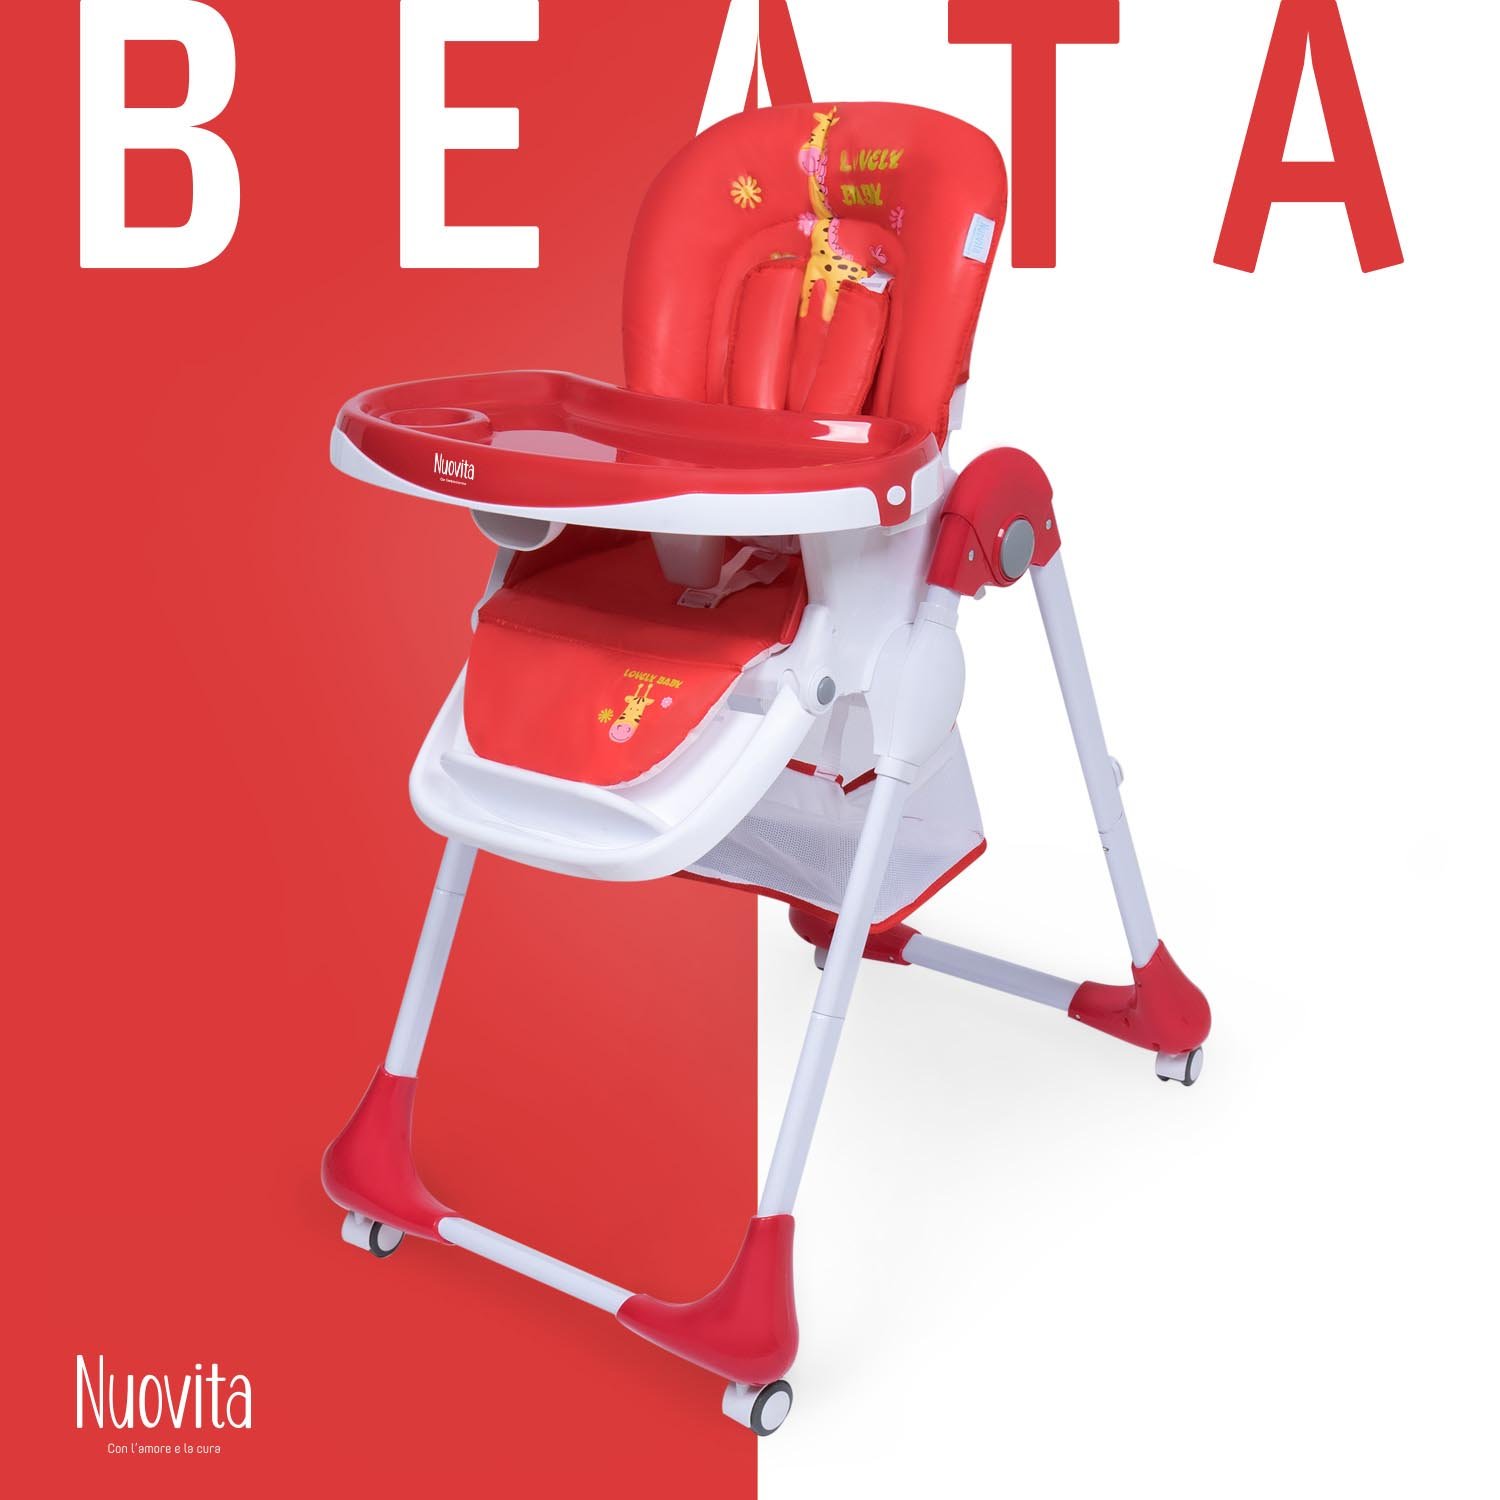 Стульчик для кормления Nuovita Beata ( Savana rosso) кукольный стульчик для кормления красный в коробке 50280fsc